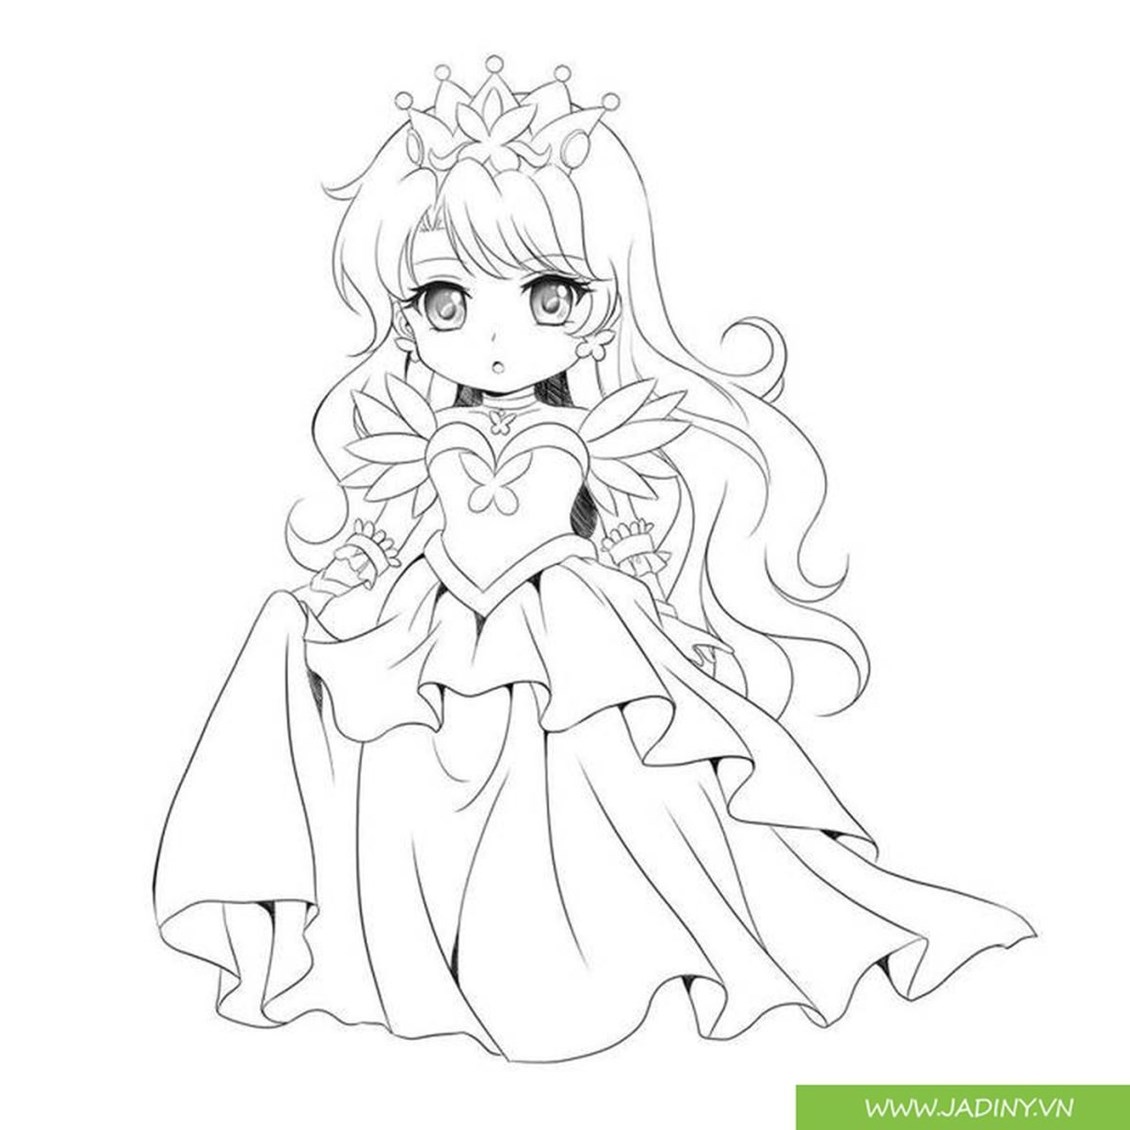 Download tranh tô màu cho bé với những nhân vật công chúa, nhân vật trong  các phim hoạt hình dễ thương, Trọn Bộ Tran… | Cardcaptor sakura, Cô gái  trong anime, Anime